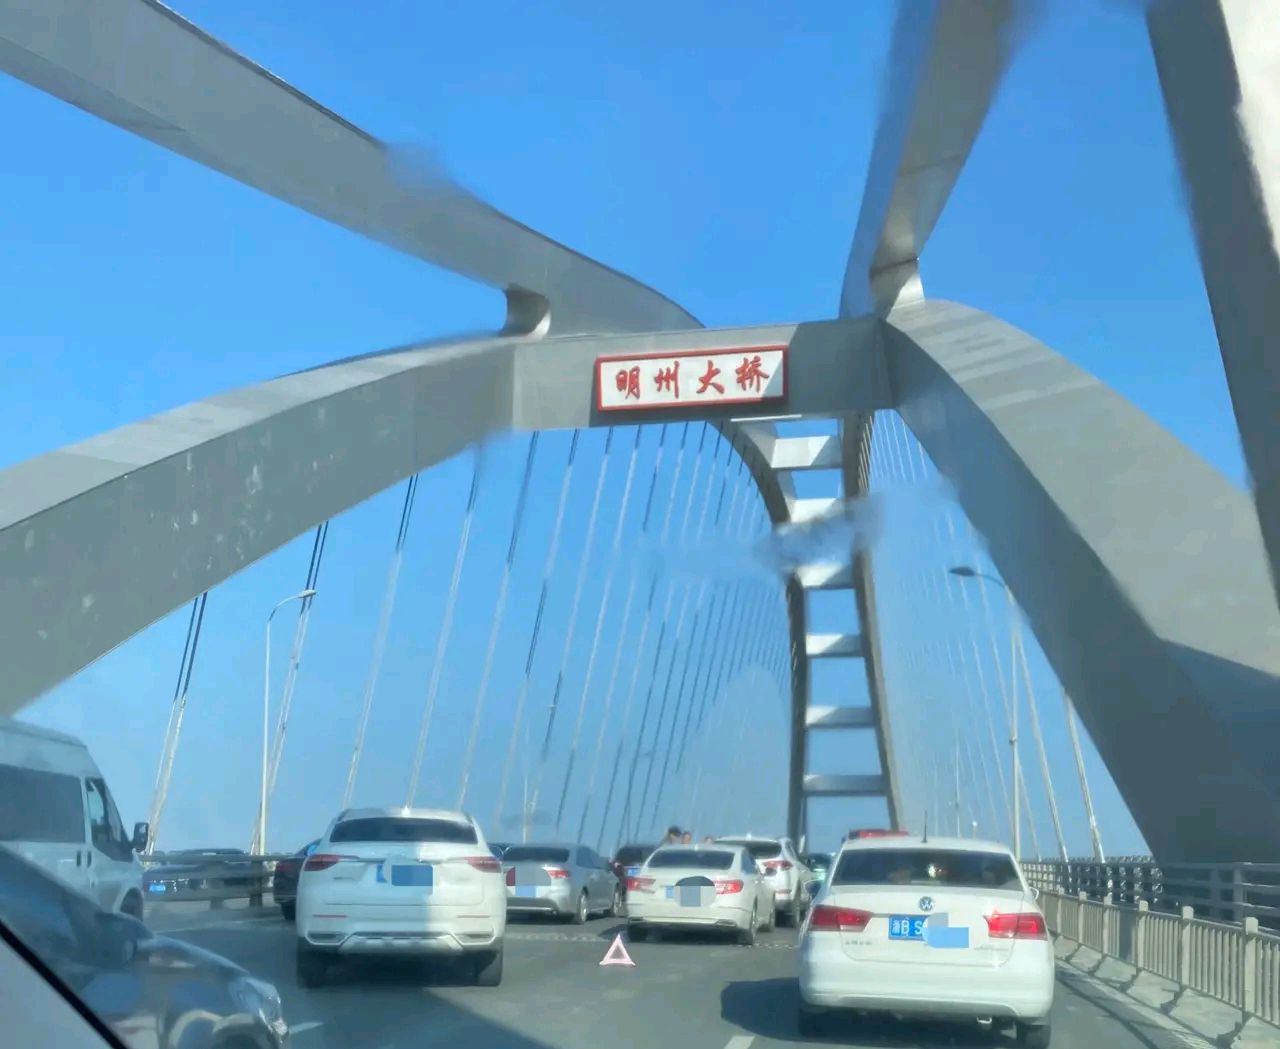 曾经"宁波拥堵群主"的明州大桥,再次爆堵!